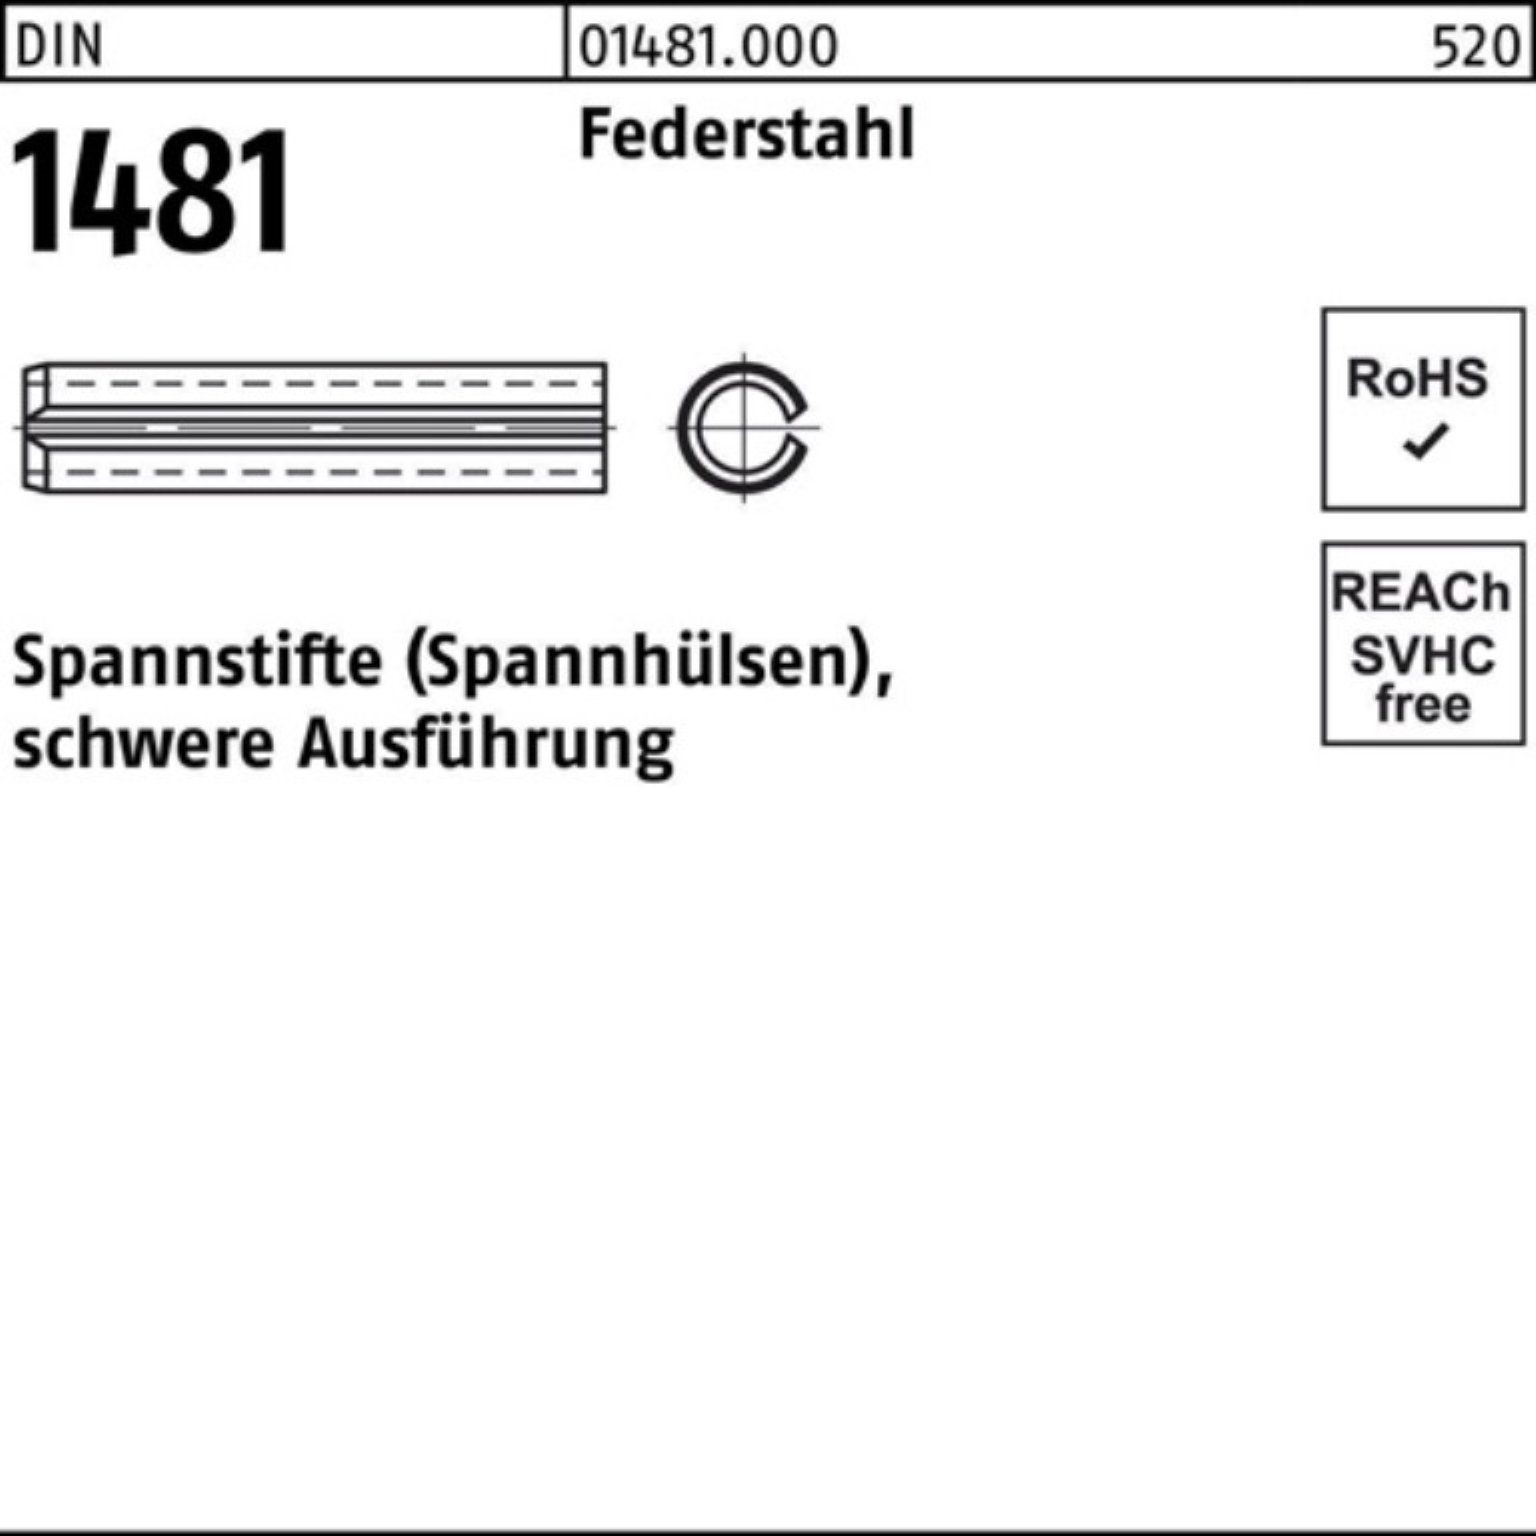 Reyher Spannstift 100er Pack Spannstift DIN 1481 14x 80 Federstahl schwere Ausführung 2